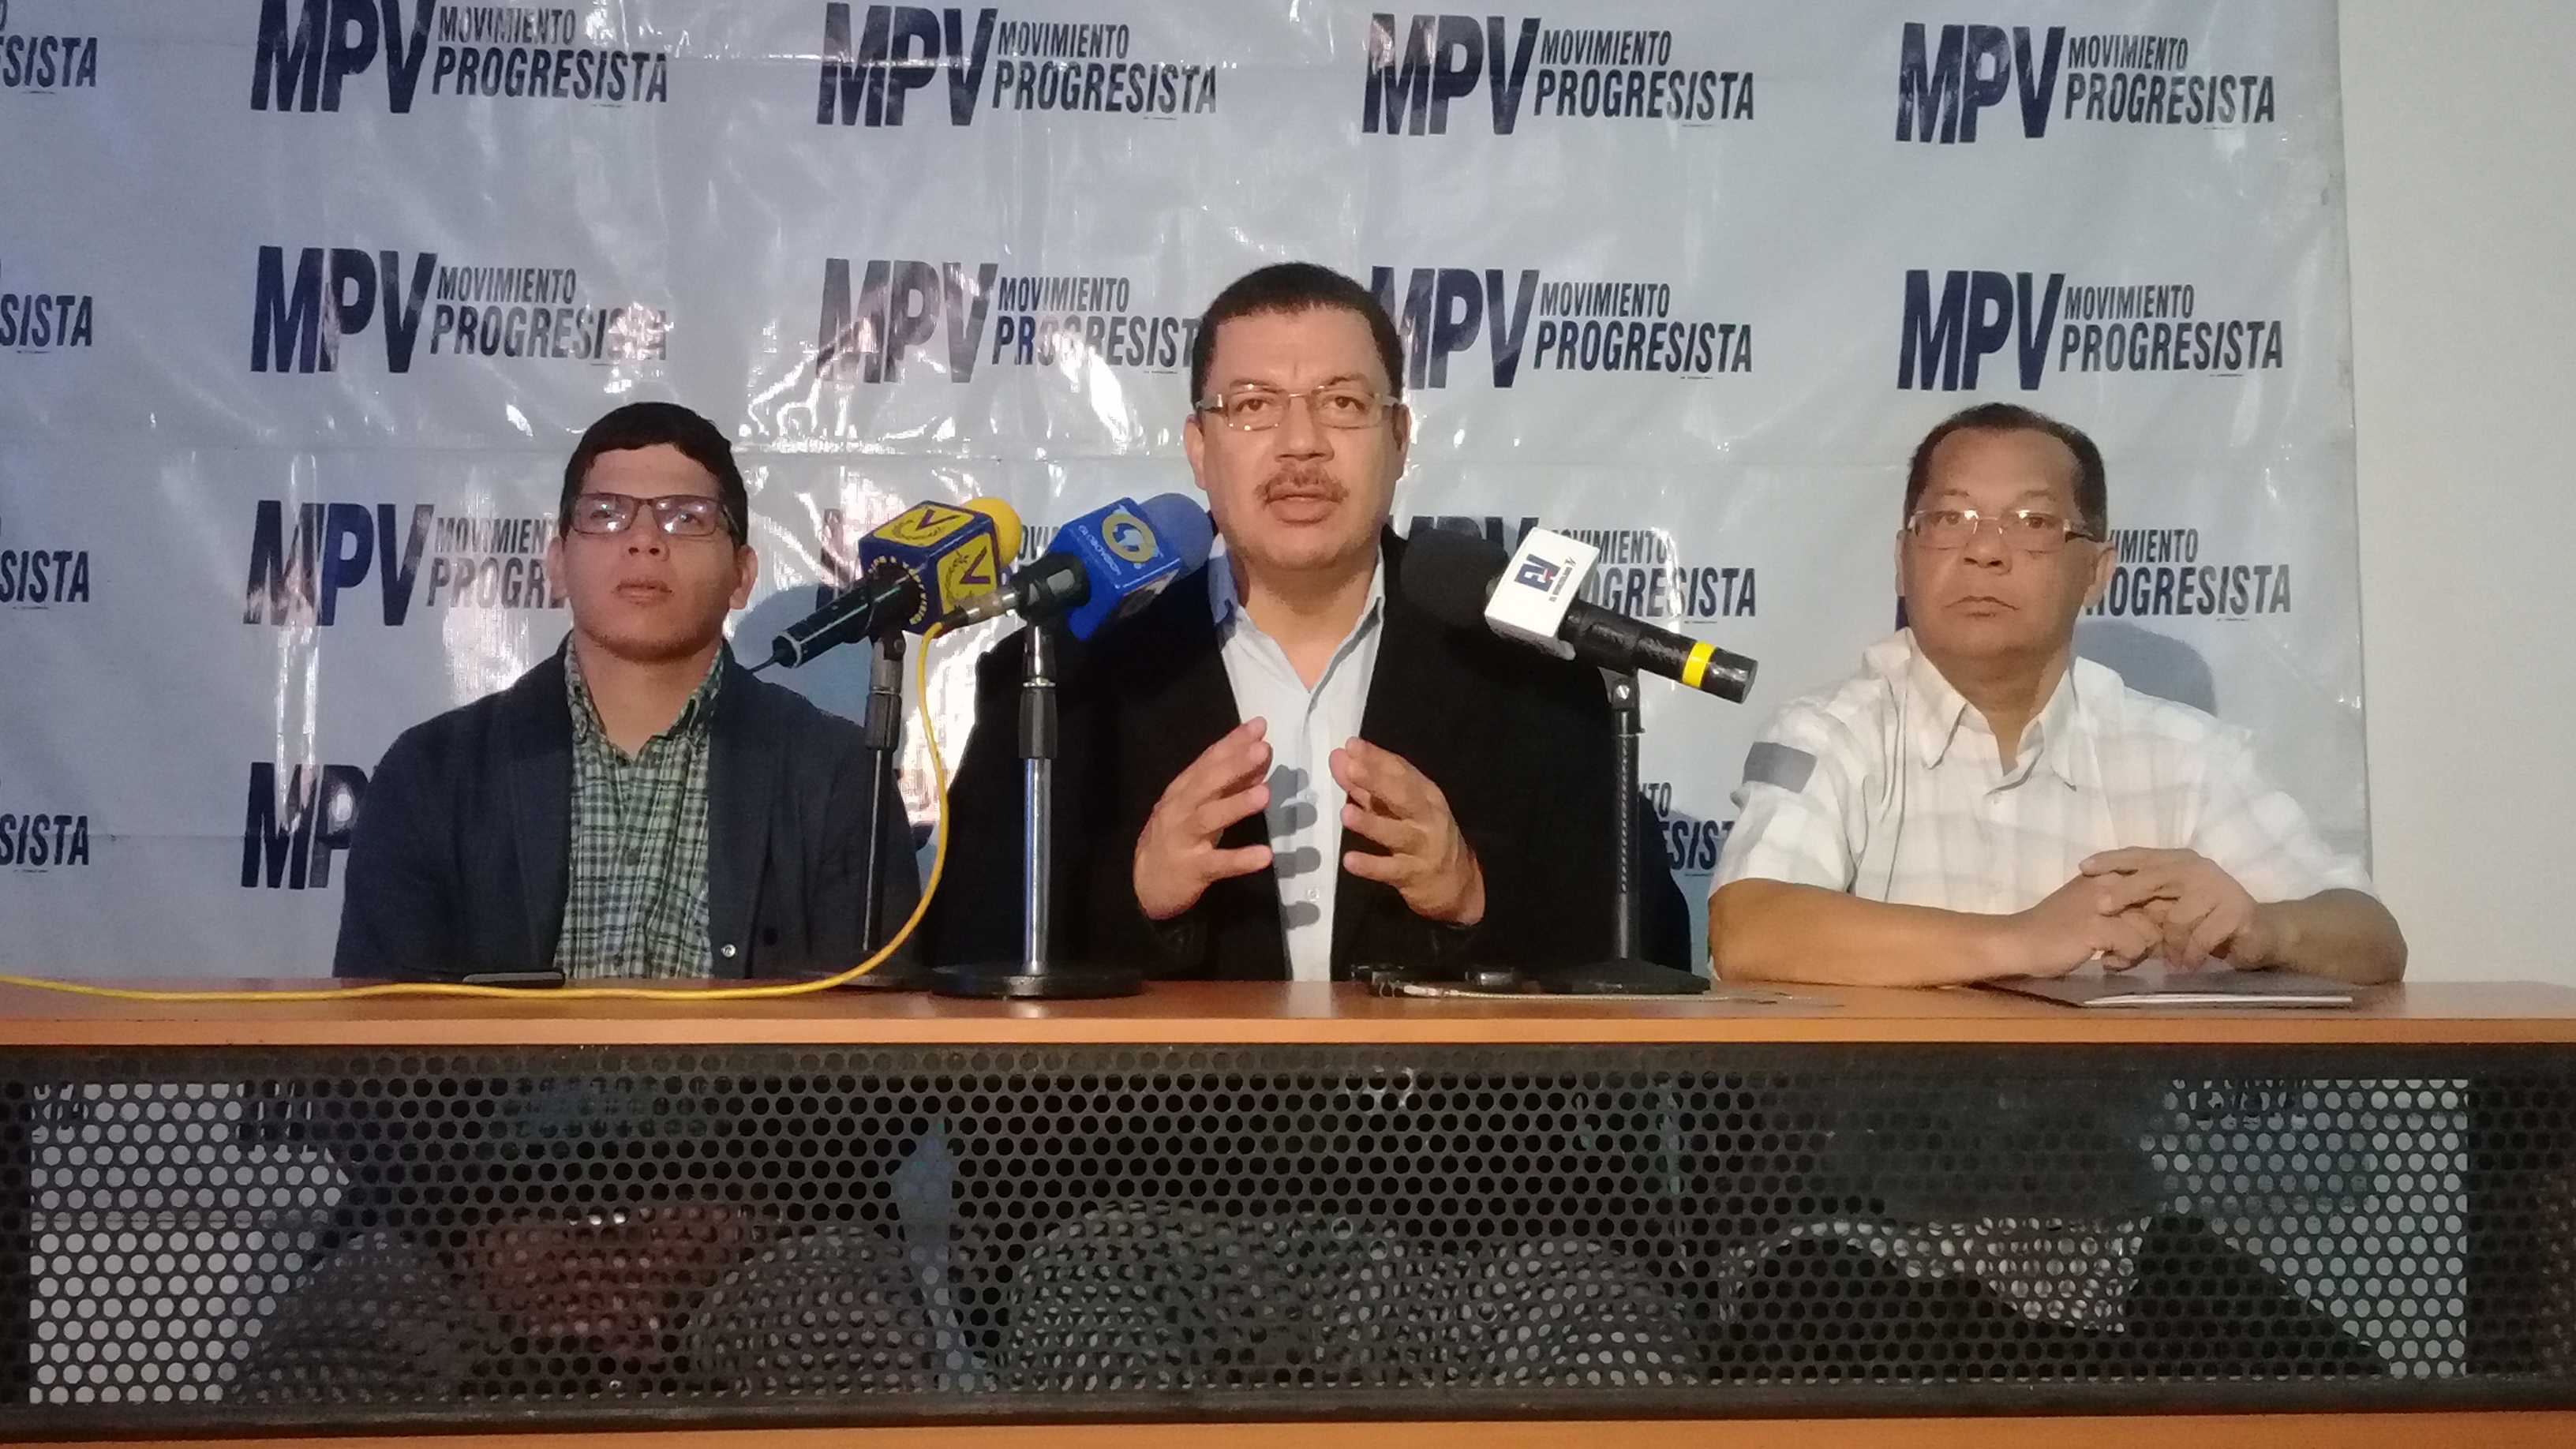 Hoy en Venezuela no hay diálogo porque no hay condiciones para su desarrollo, aseguró Simón Calzadilla